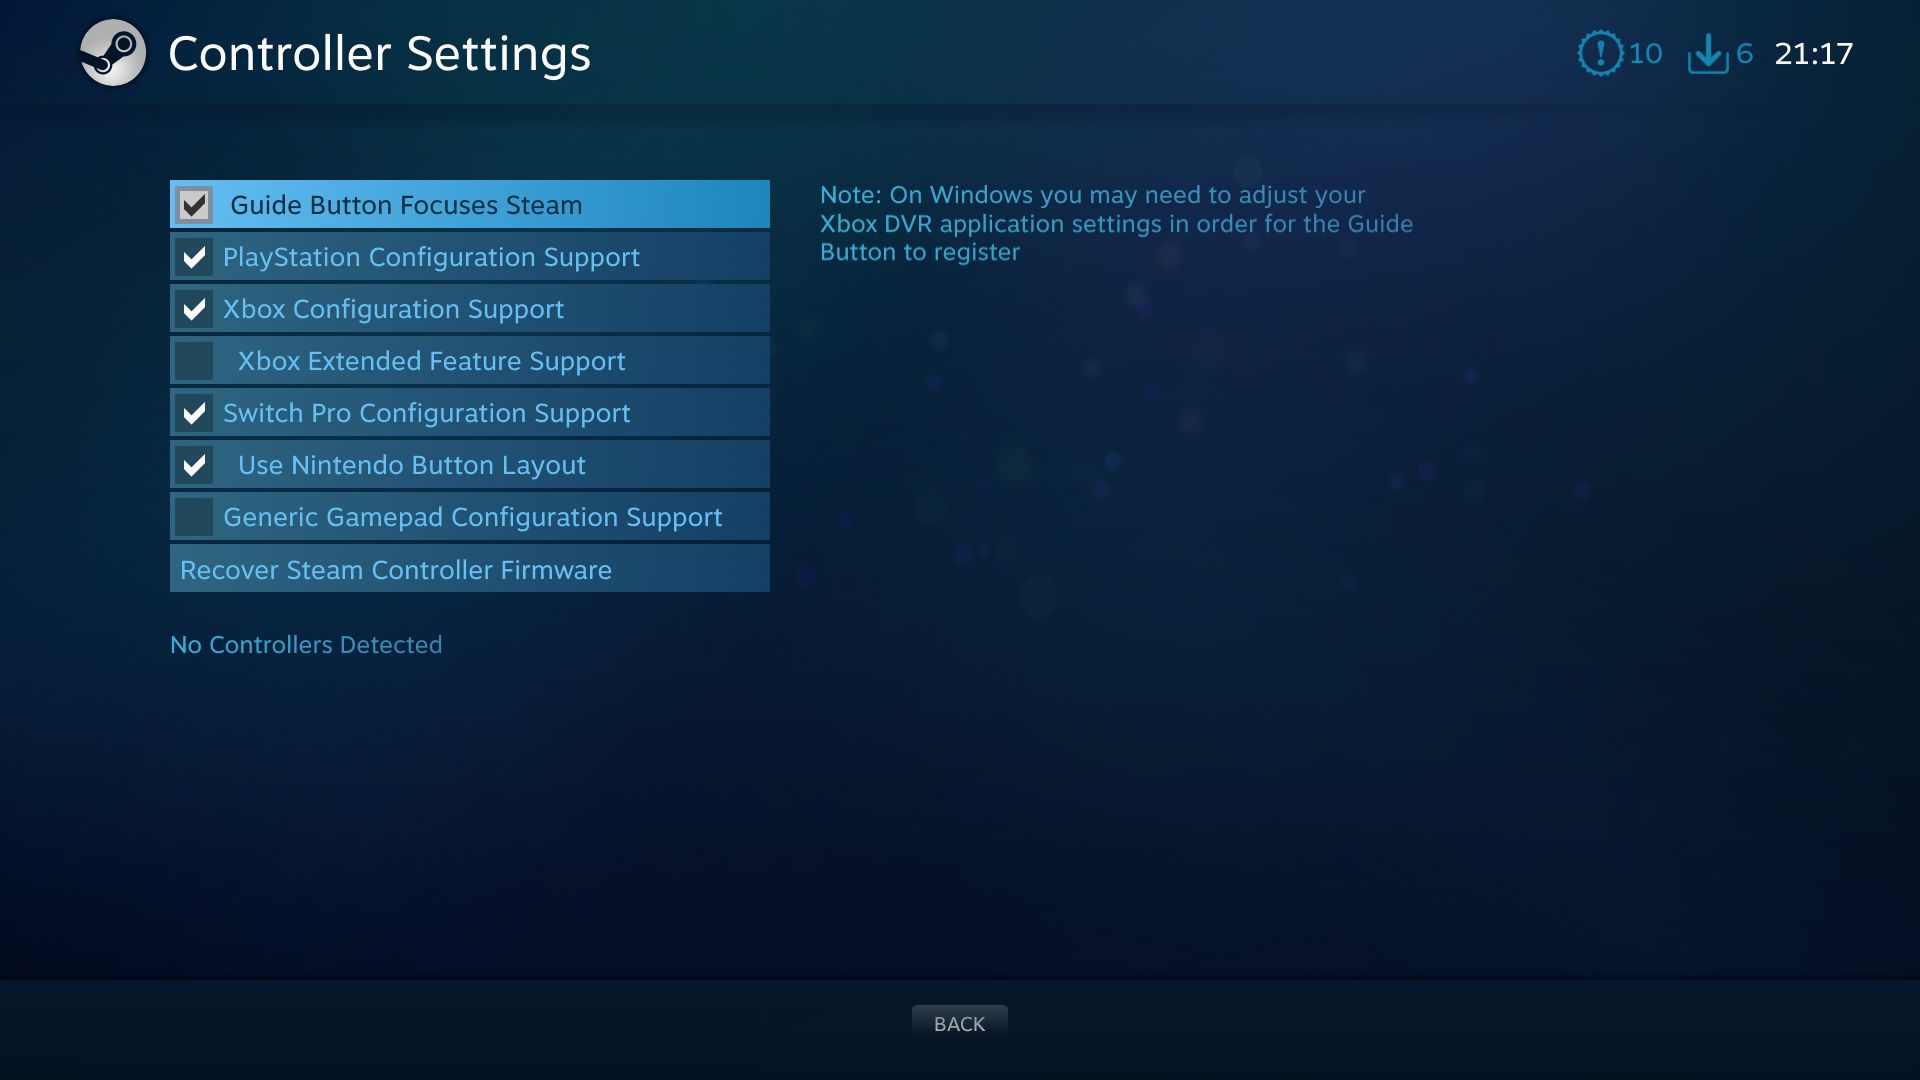 big picture controller settings screen - Come configurare e utilizzare i controller della console con Steam